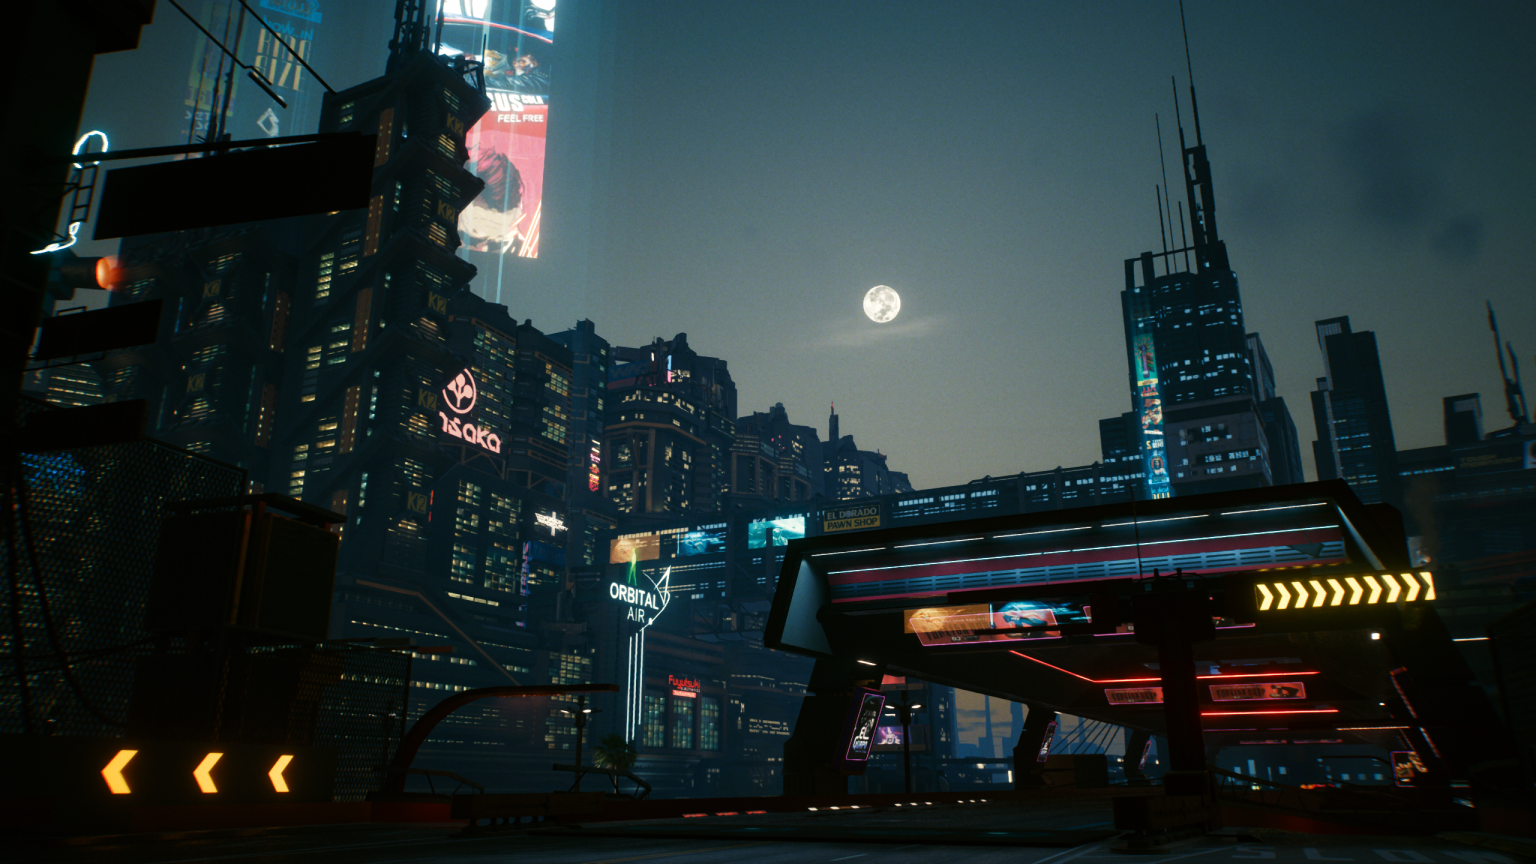 Cyberpunk night city minecraft фото 92